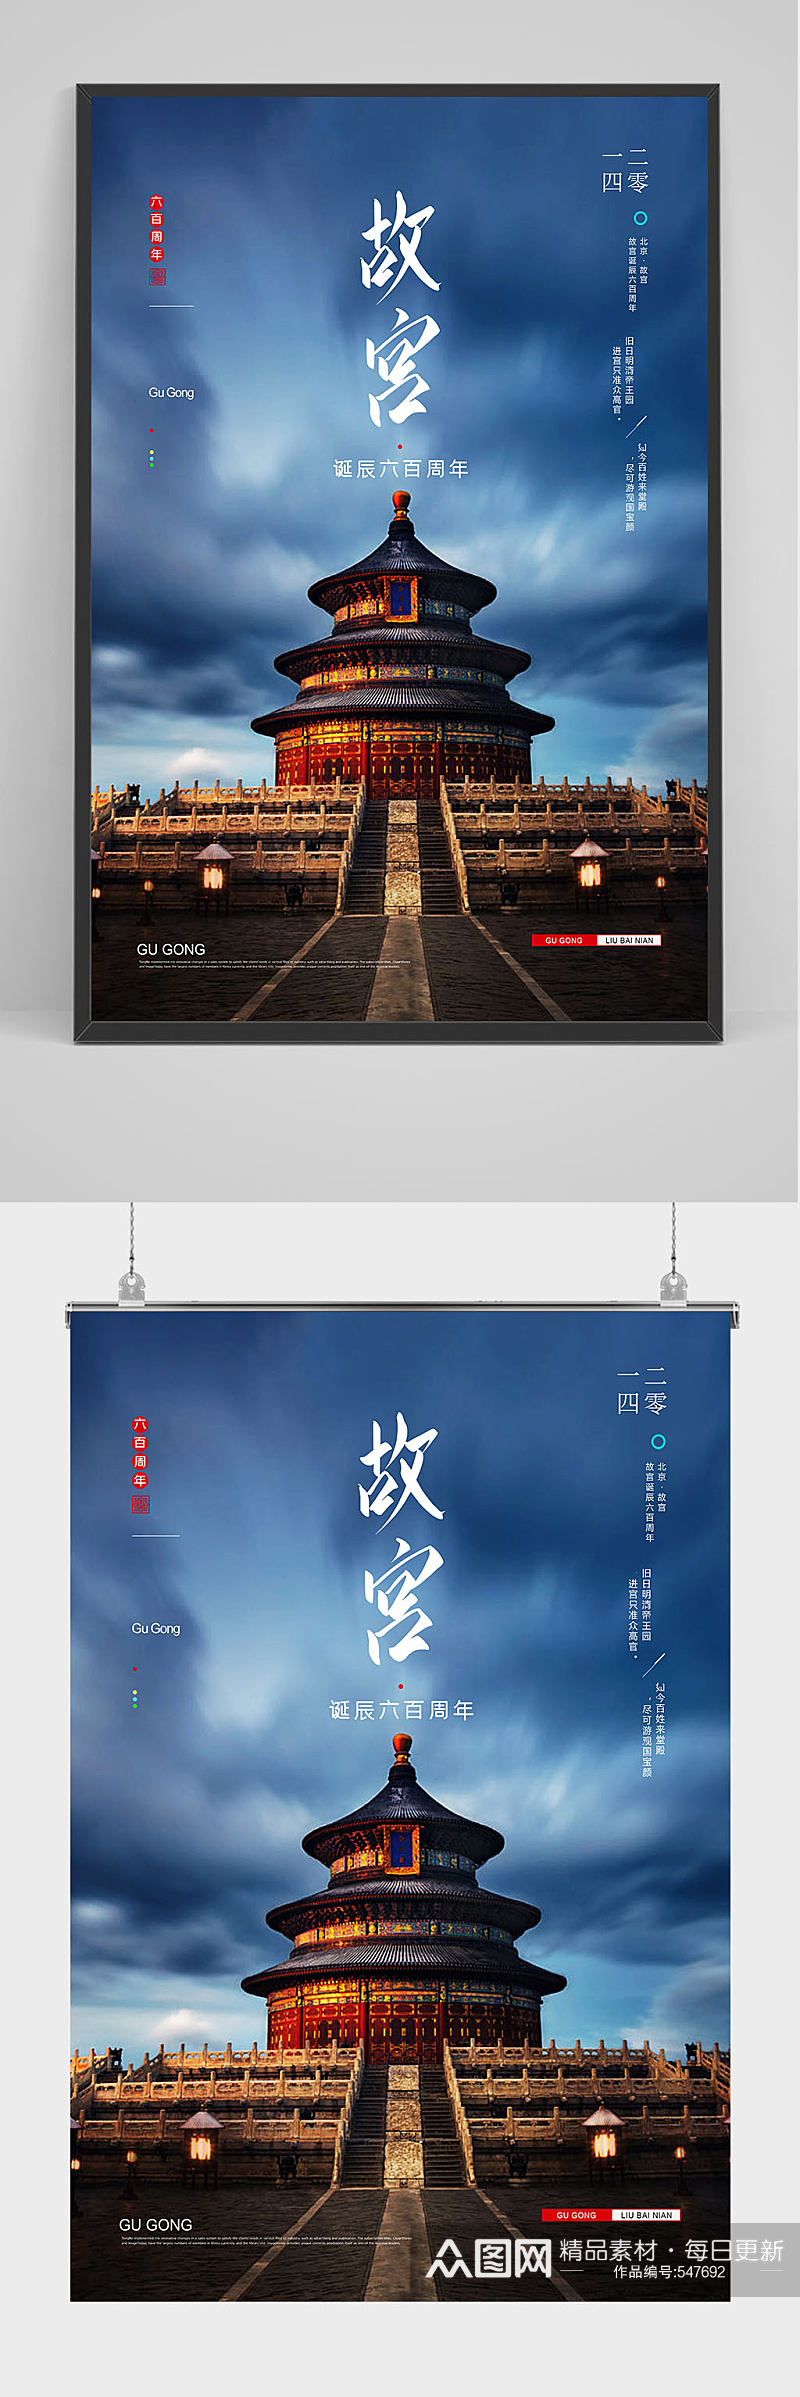 中国北京故宫之旅海报设计素材